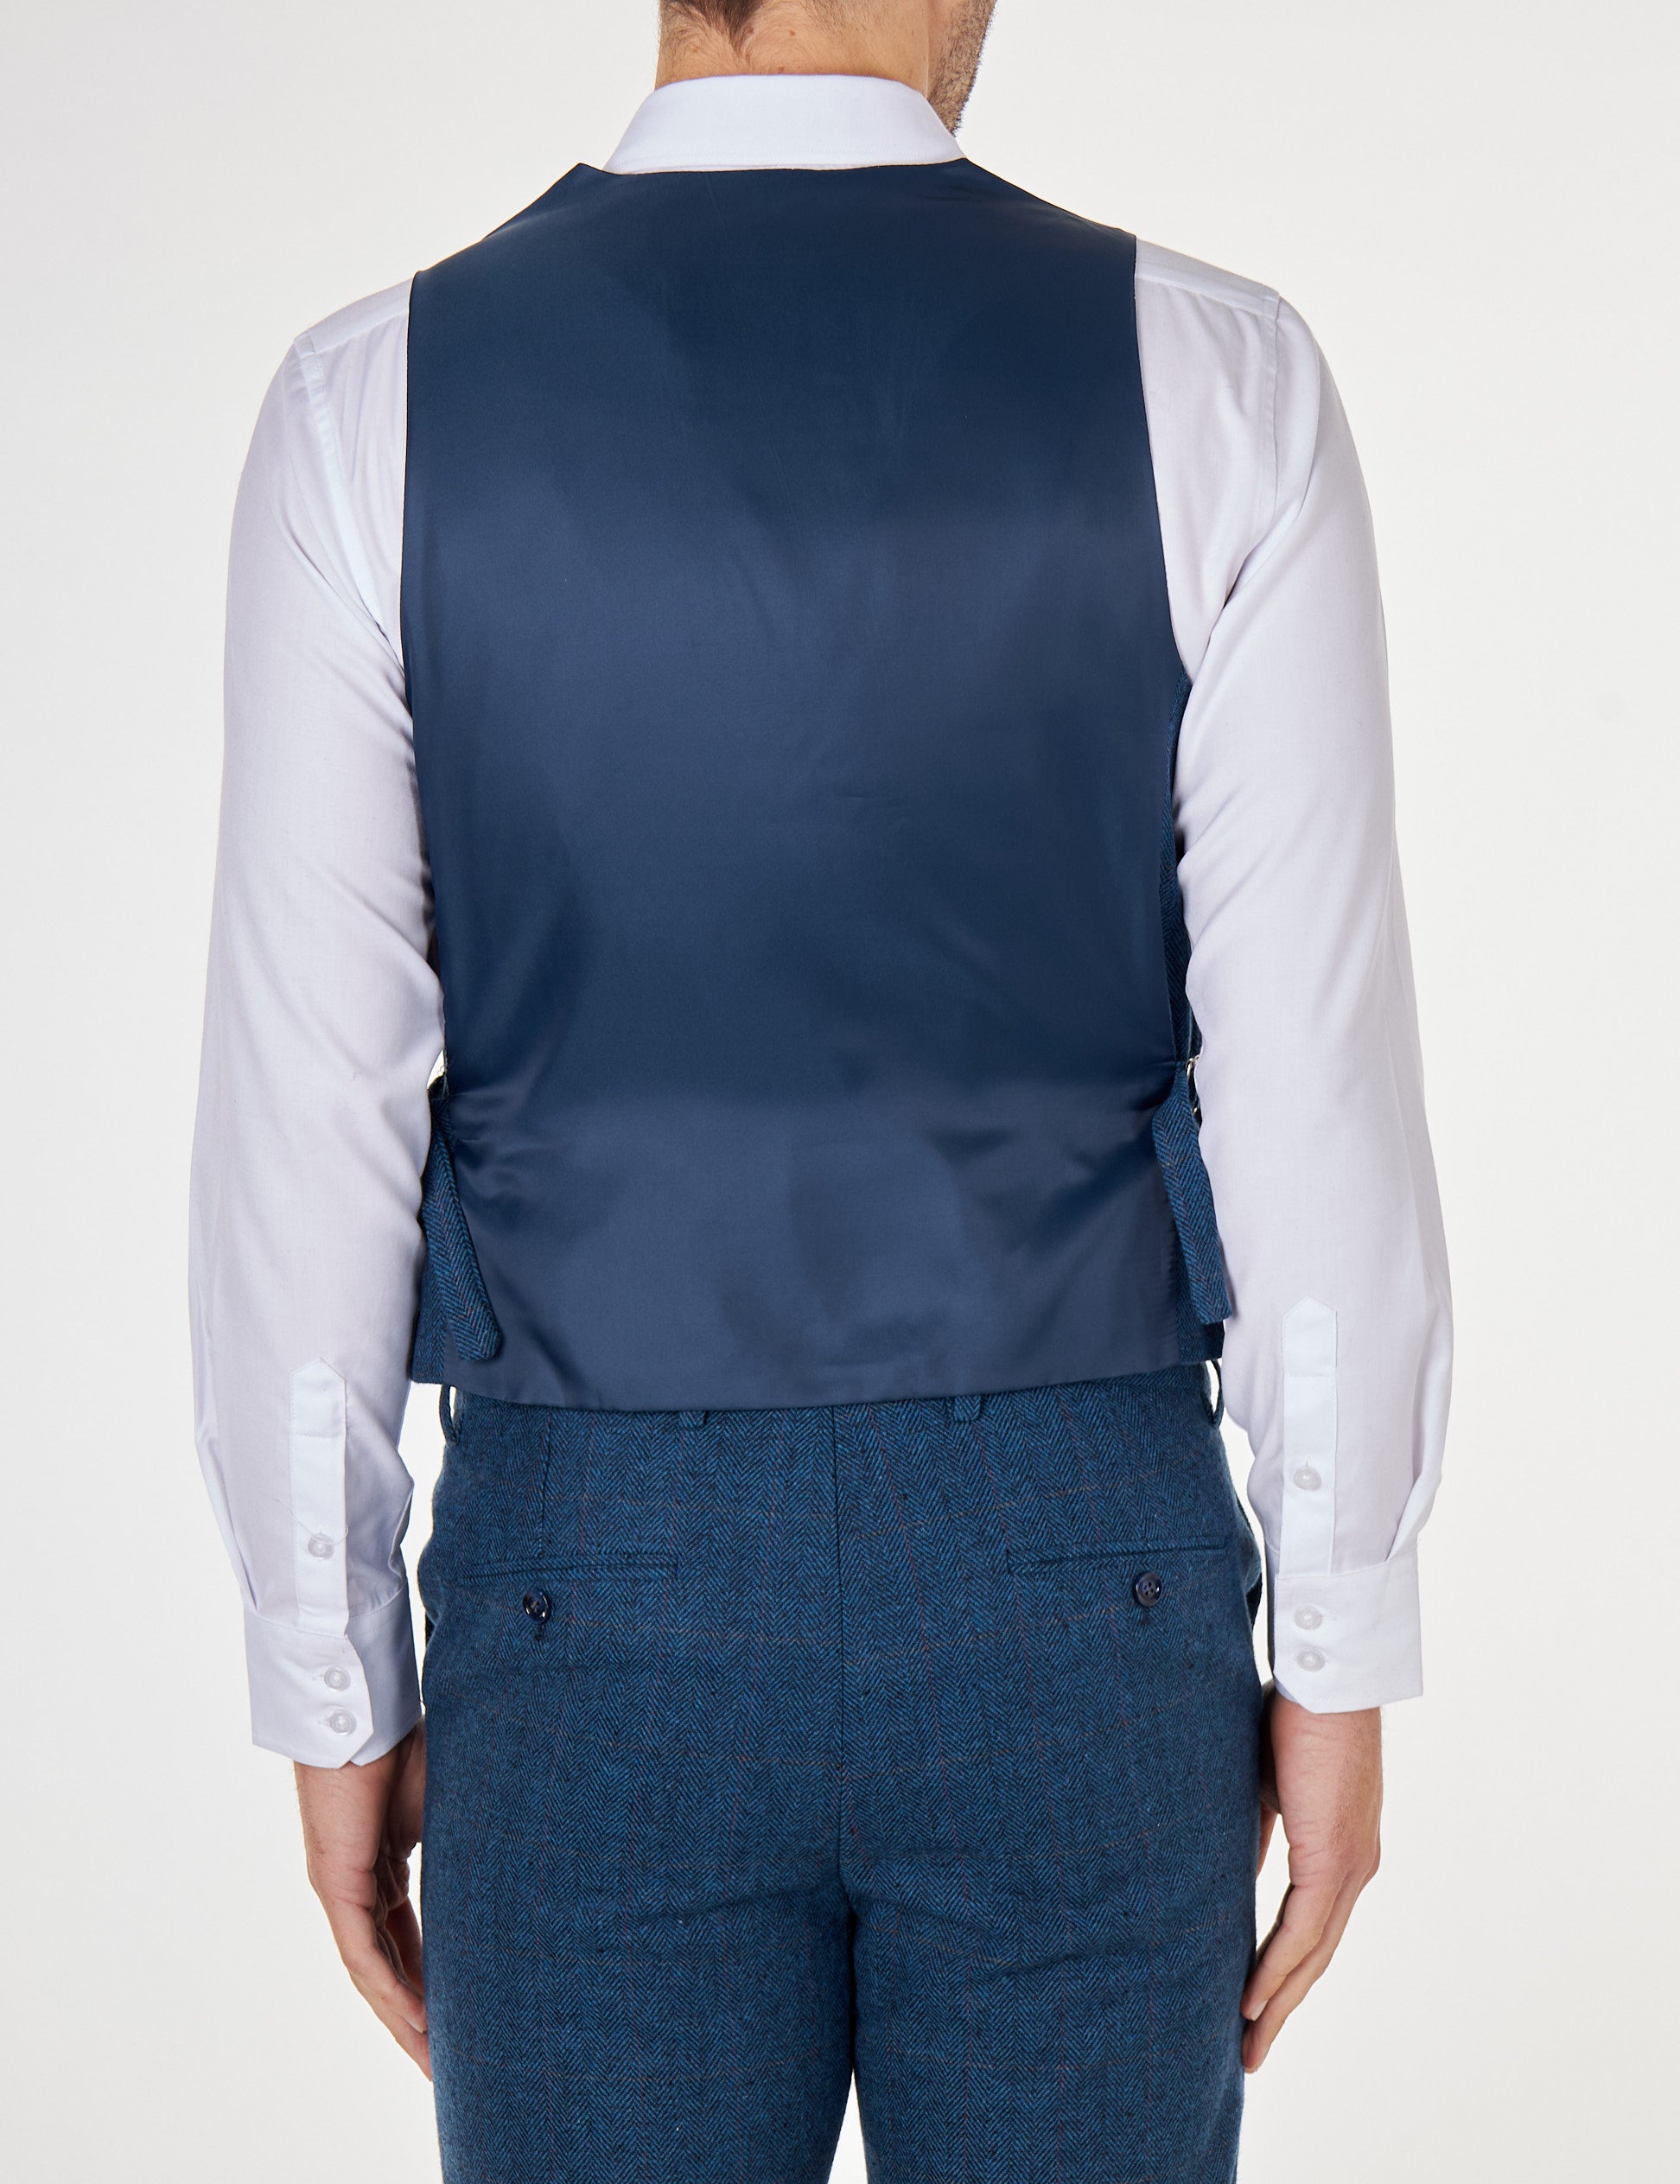 Kano - Navy Tweed Double Breasted waistcoat